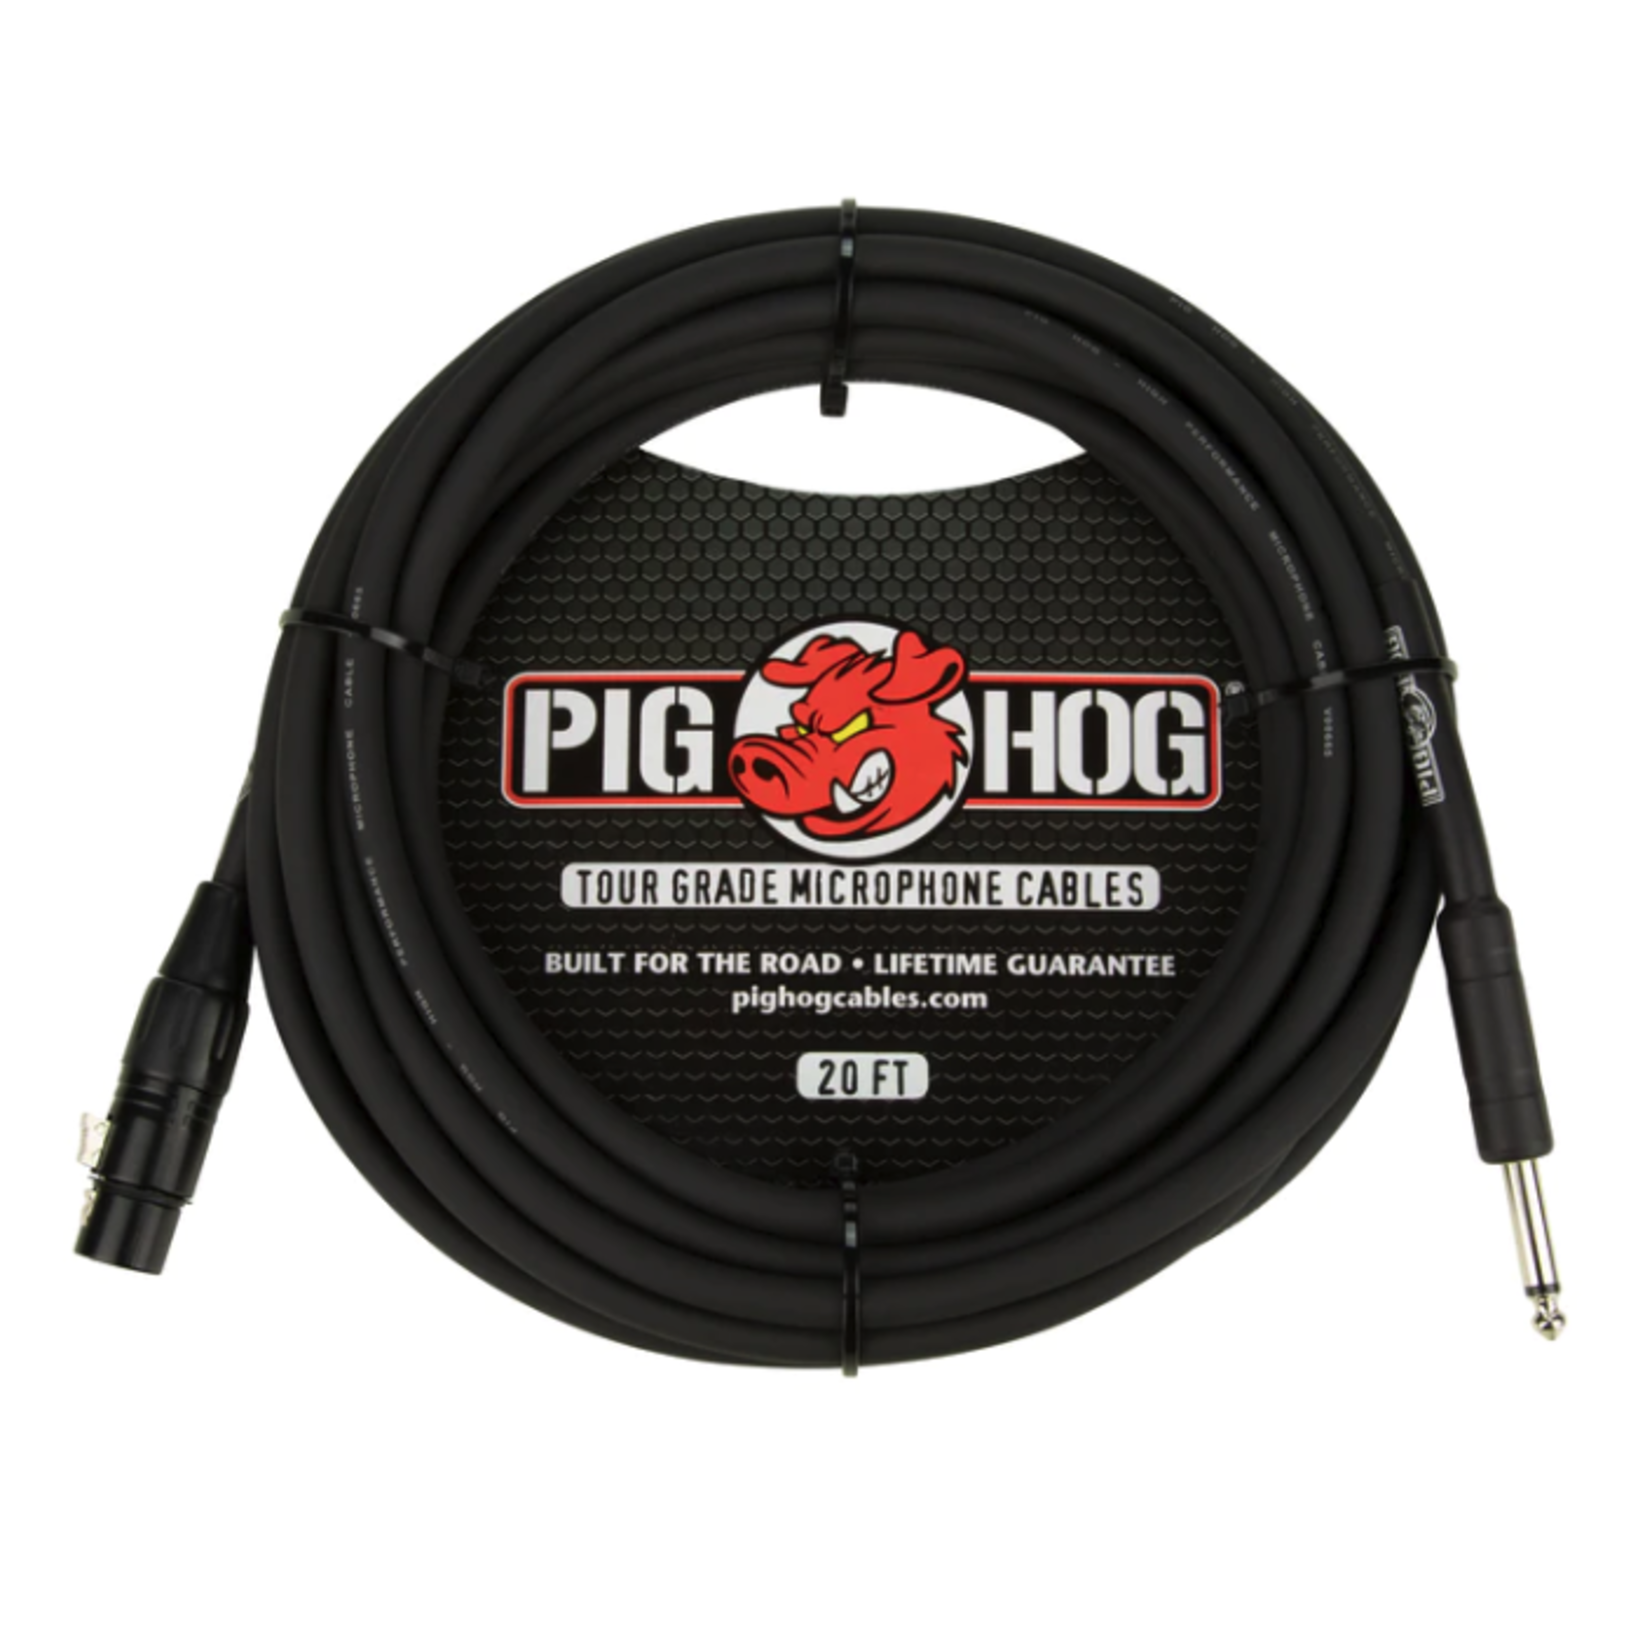 Pig Hog Hi-Z Microphone Cable, 20 ft